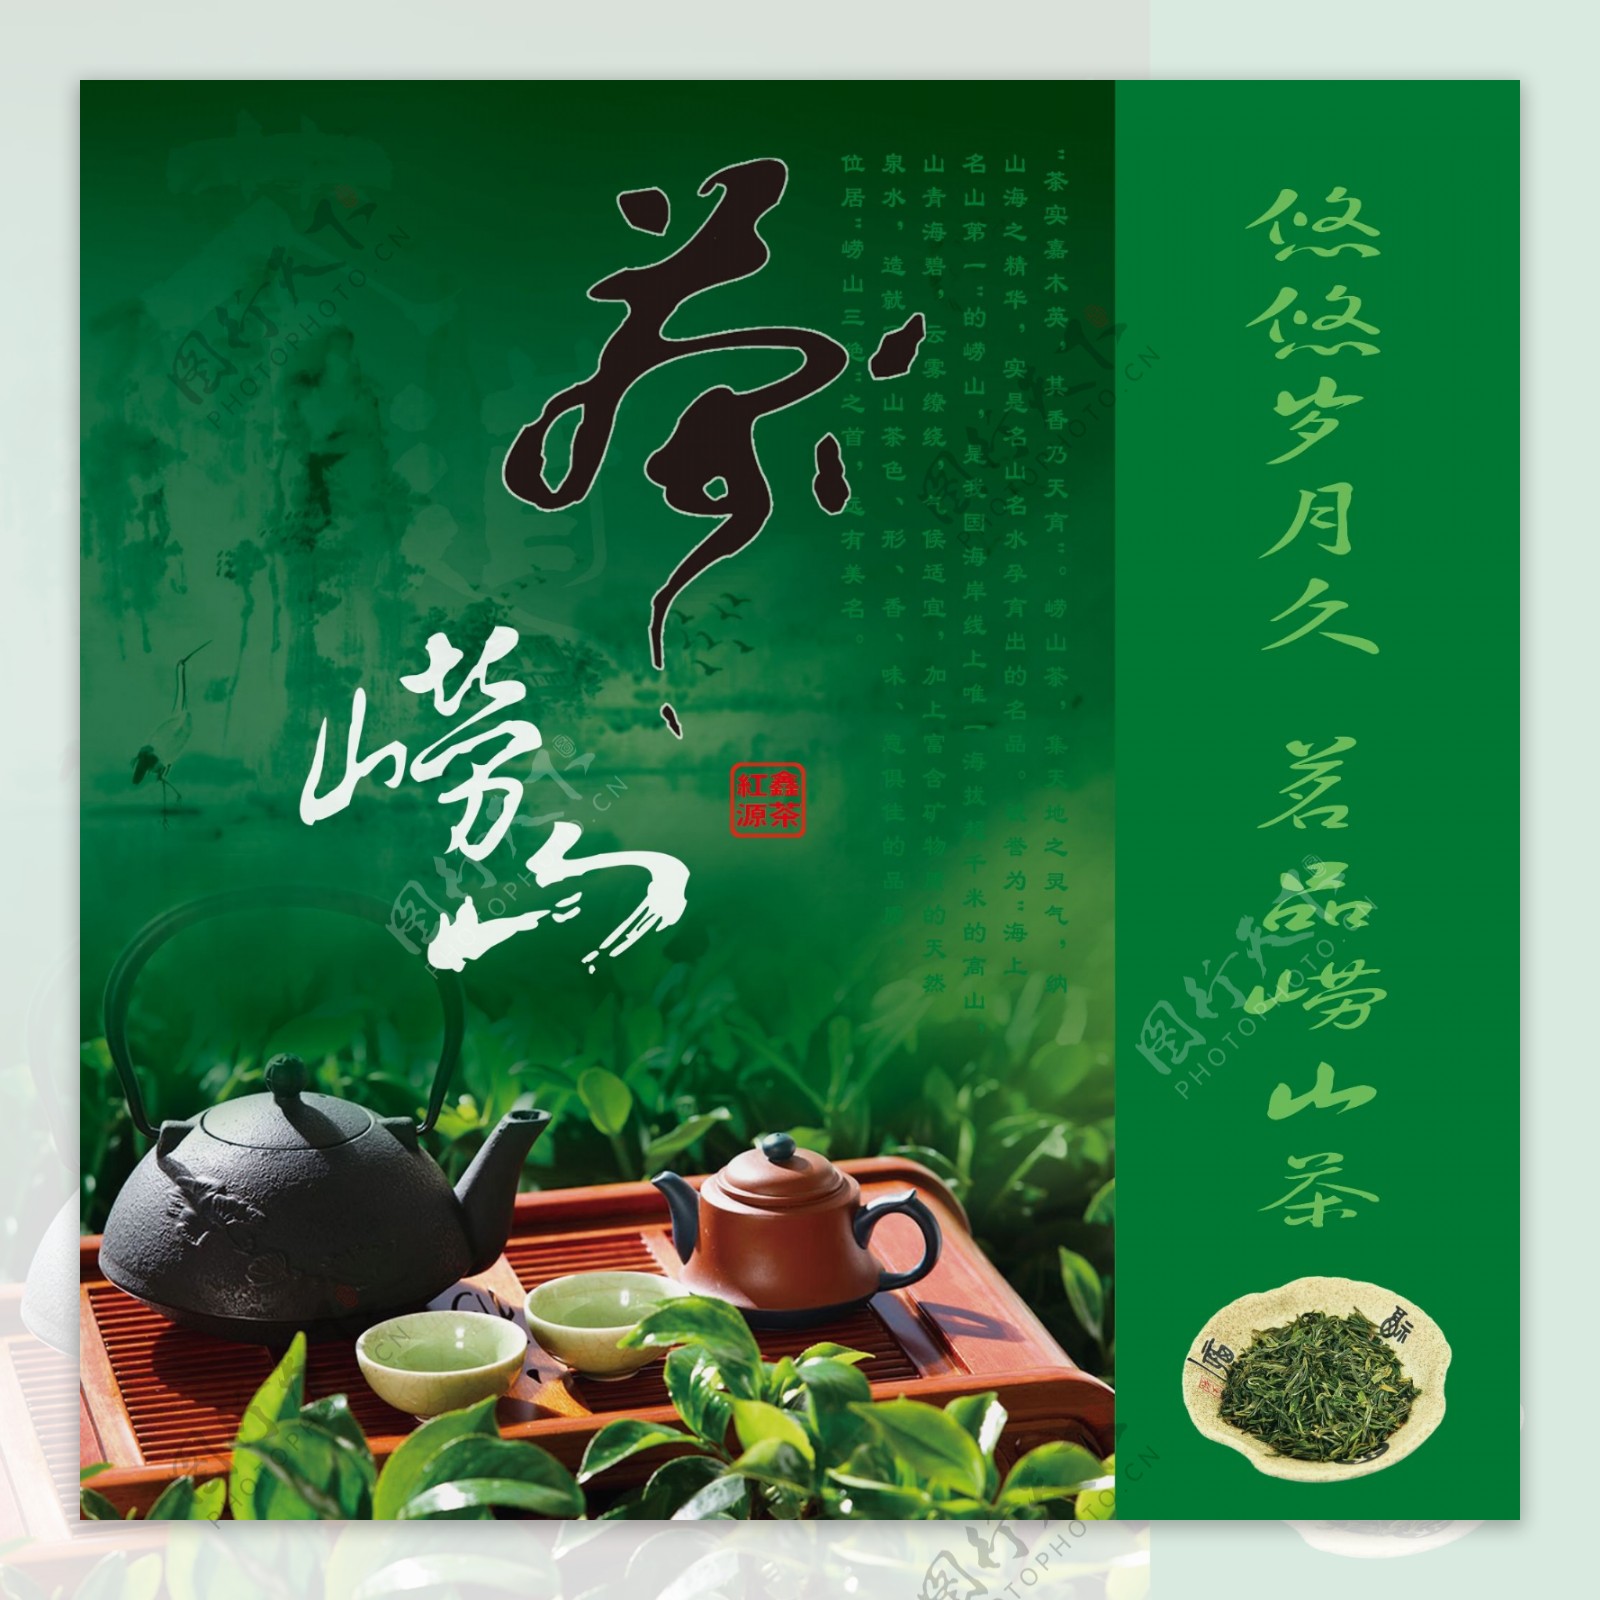 学院茶艺与茶文化工作室联合企业开展“茶山游暨崂山绿茶采制活动”